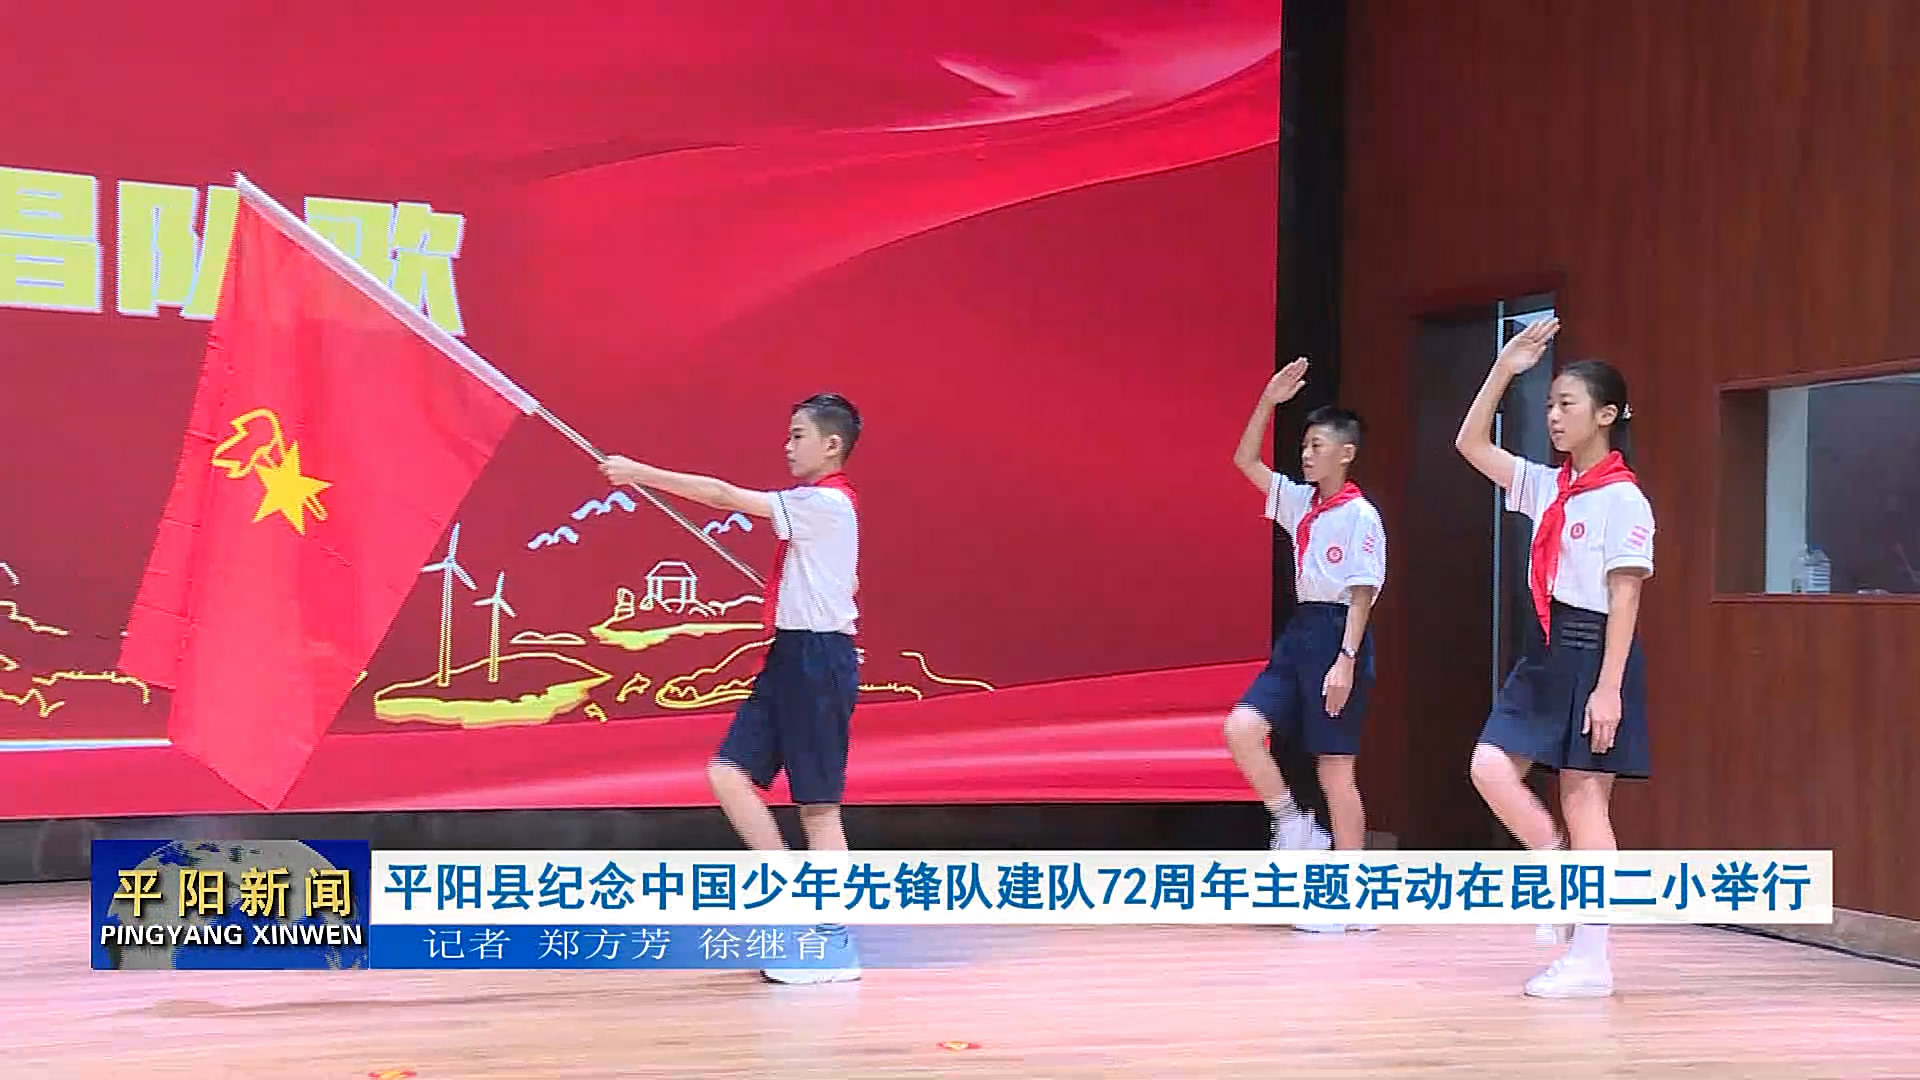 平阳县纪念中国少年先锋队建队72周年主题活动在昆阳二小举行